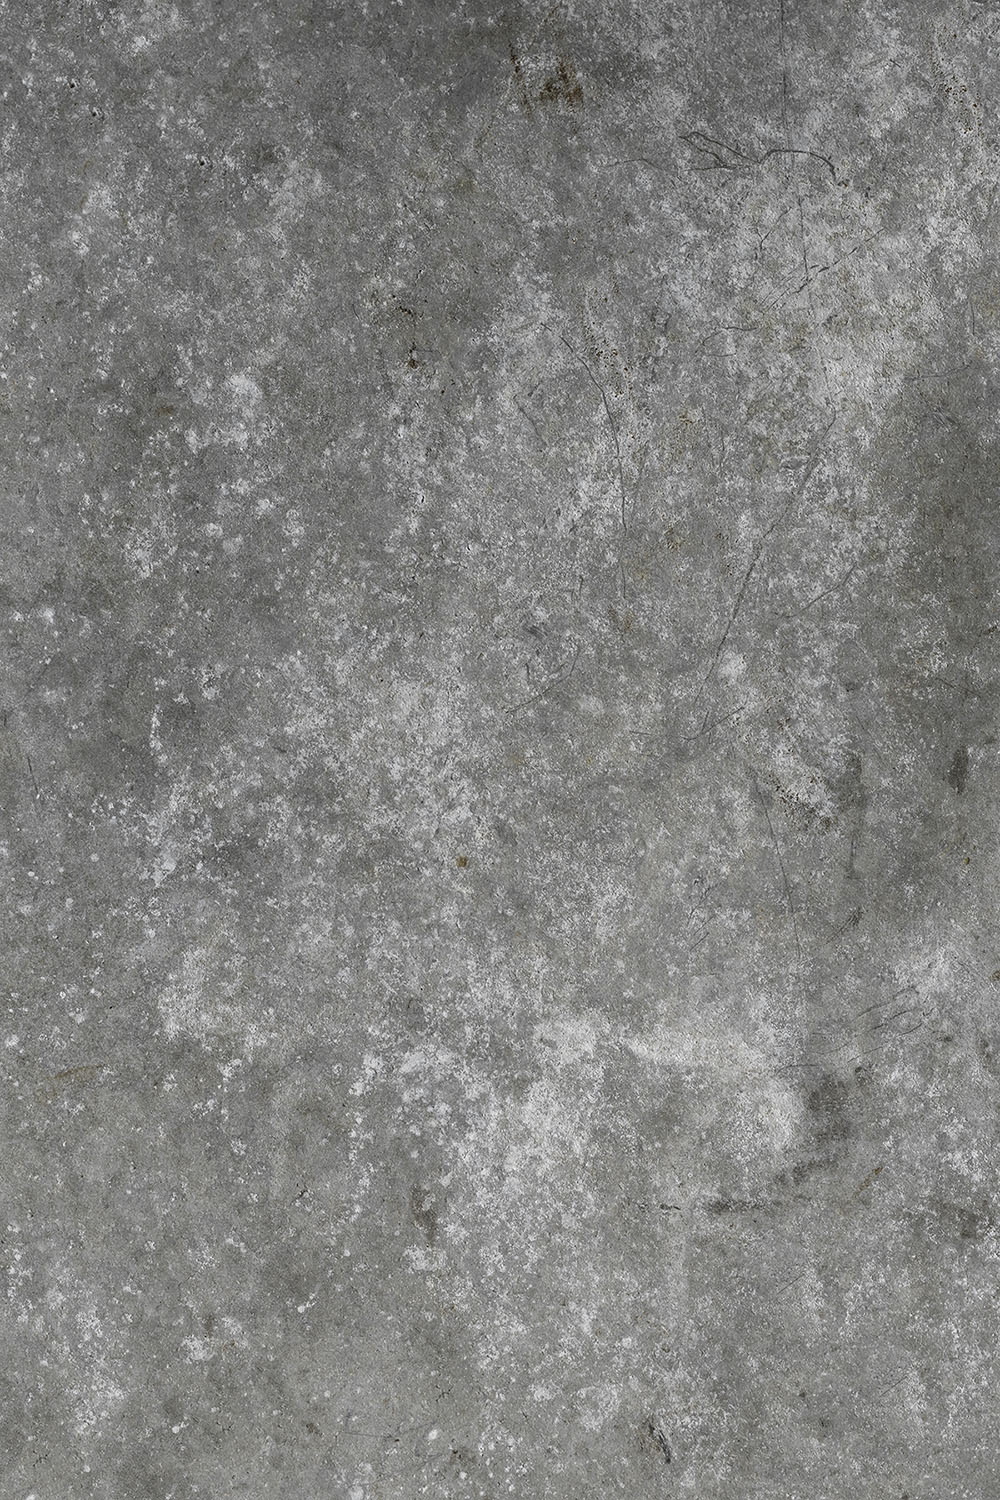 Rommelig cement fotografie achtergrond in grijs tonen en veel textuur